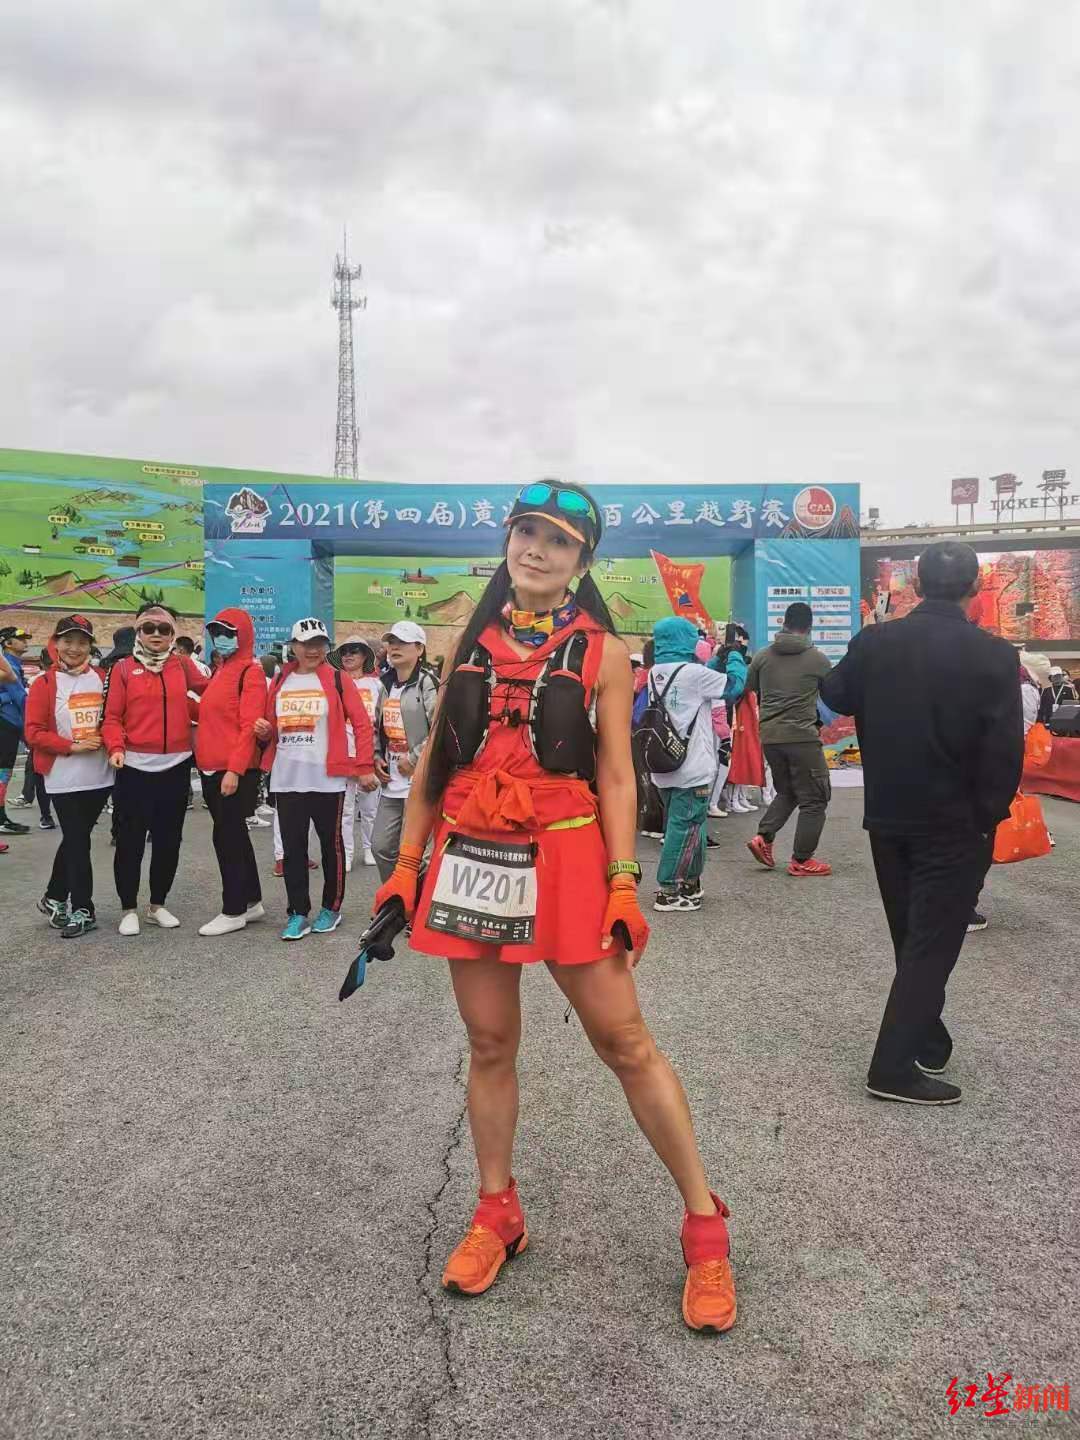 甘肃马拉松女跑者:当时选择了退赛 我还非常后悔